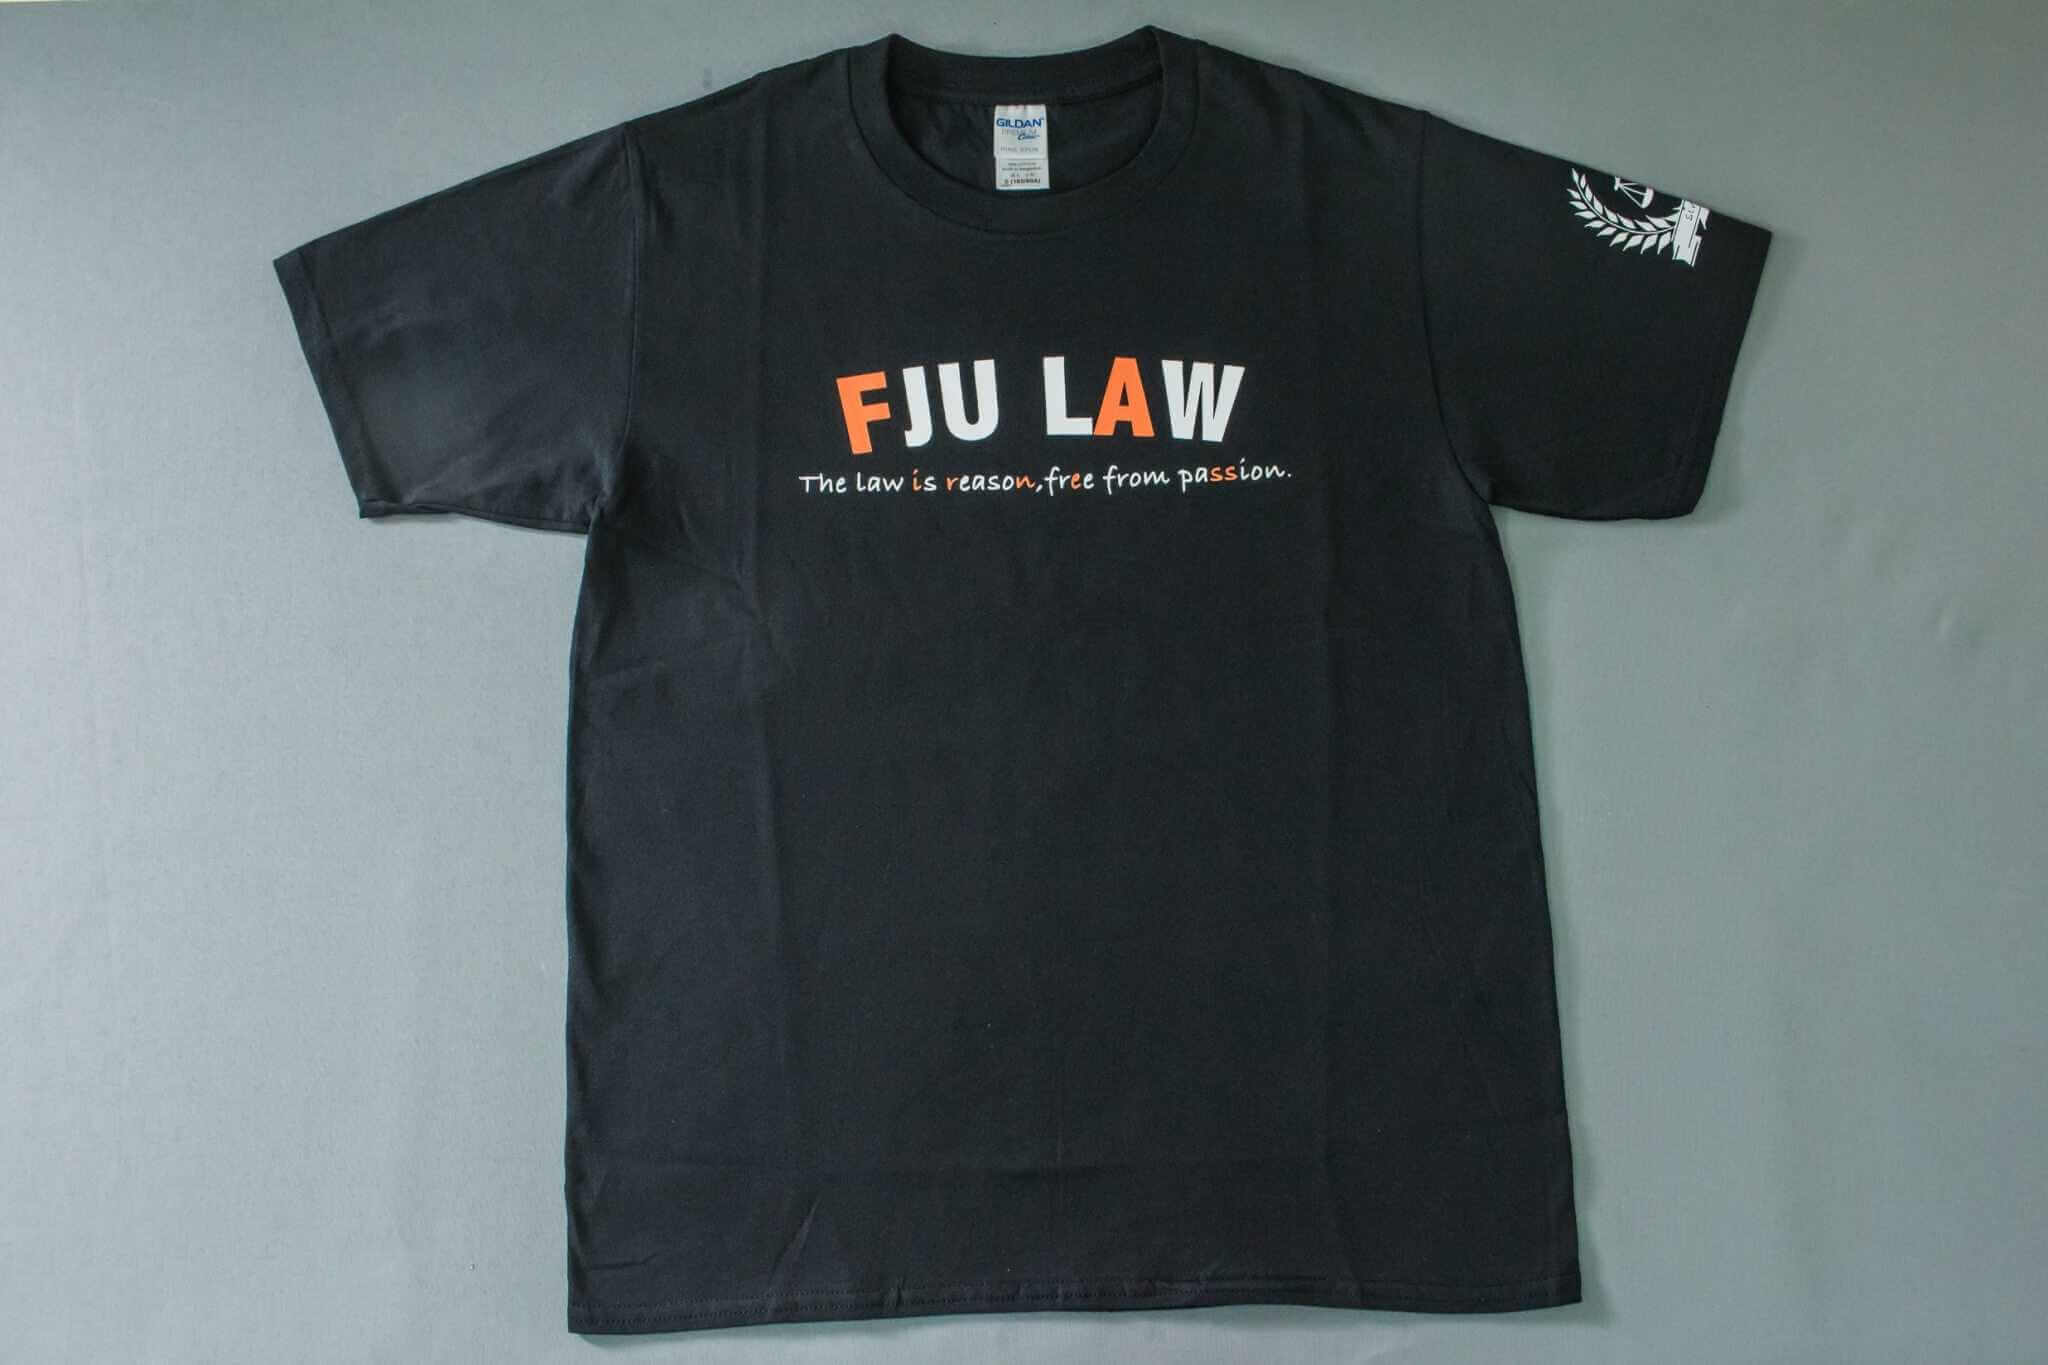 客製化T恤- FJU LAW 客製T恤的第1張圖(客製化公司制服、班服製作、團體服製作等示意或作品圖)